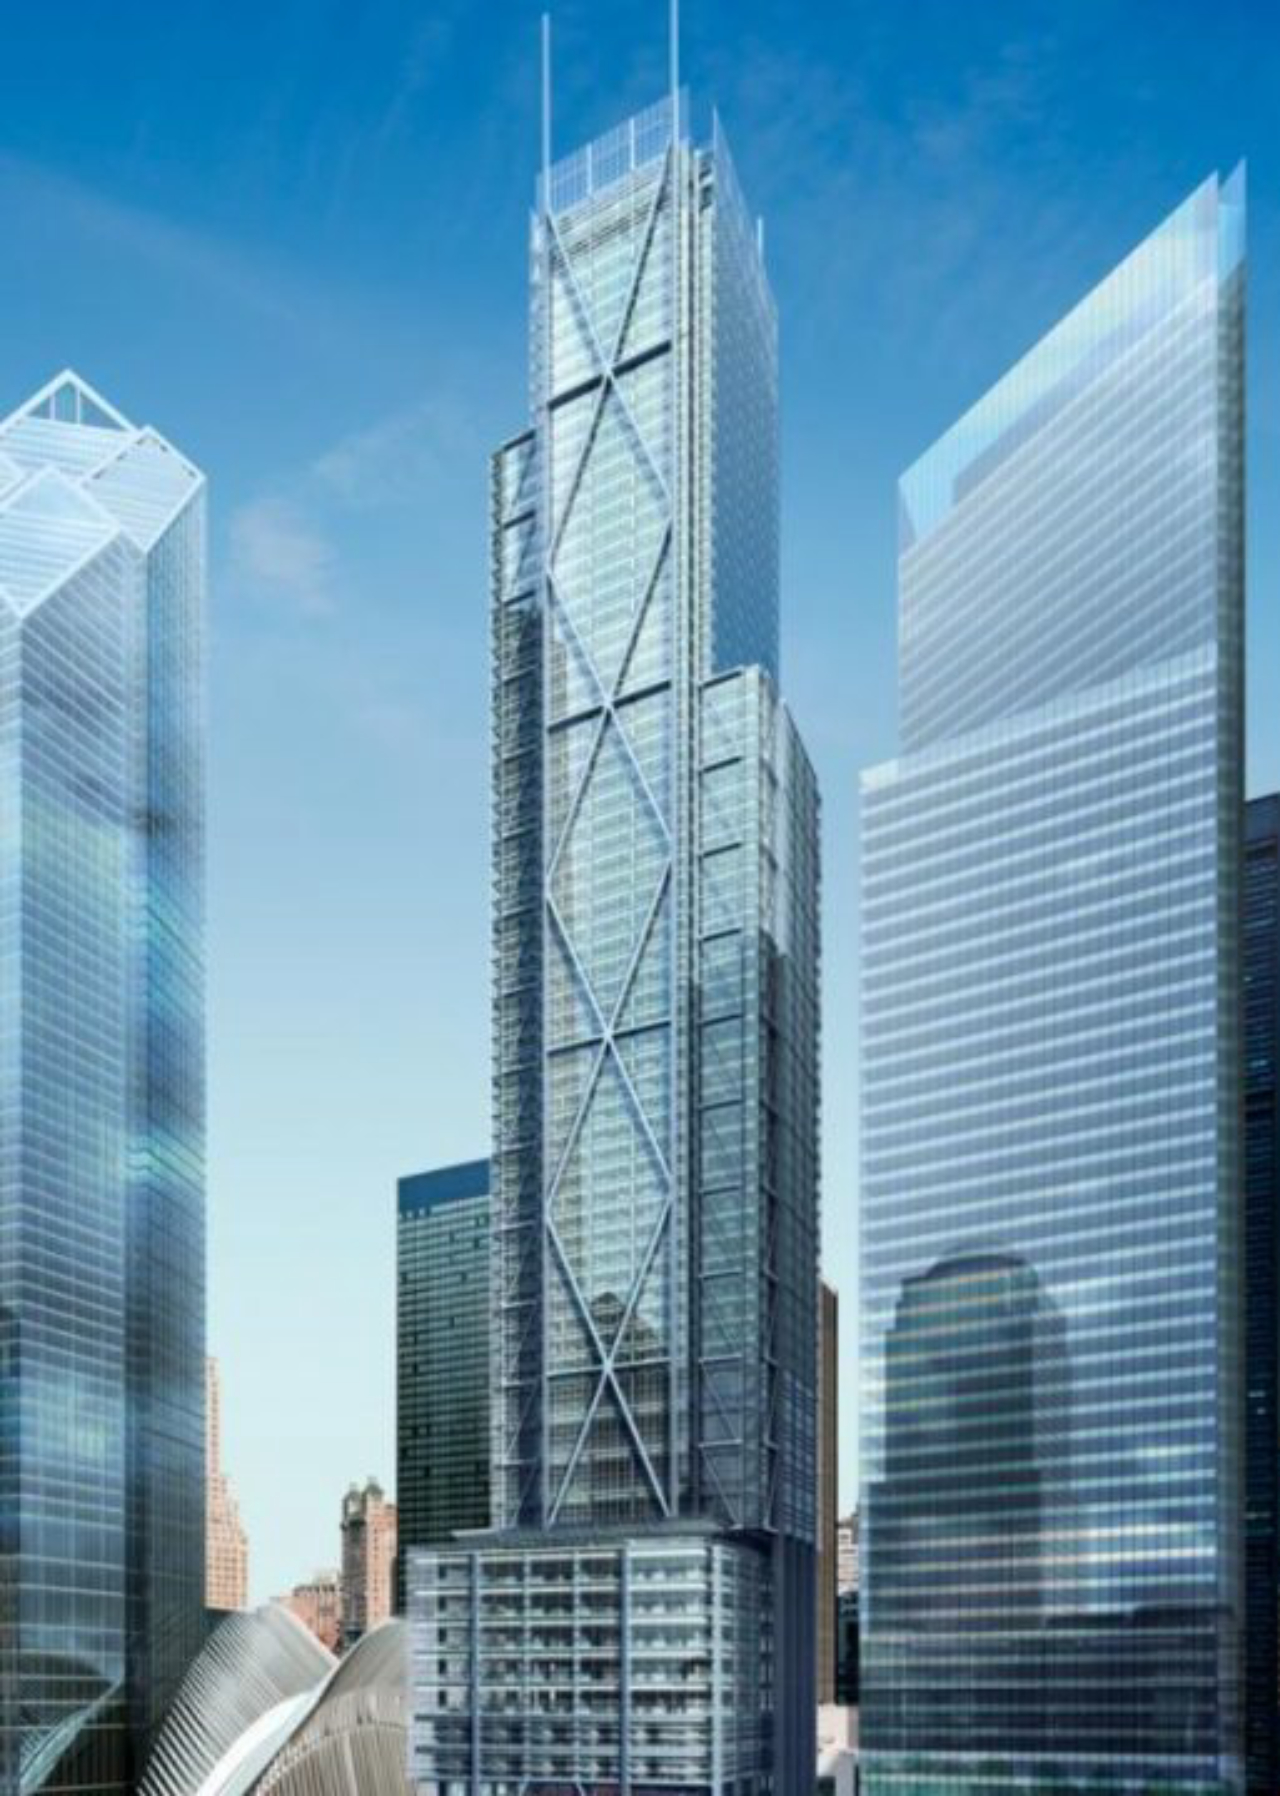 Edifício 3 World Trade Center também leva a assinatura do arquiteto, falecido neste sábado (18).